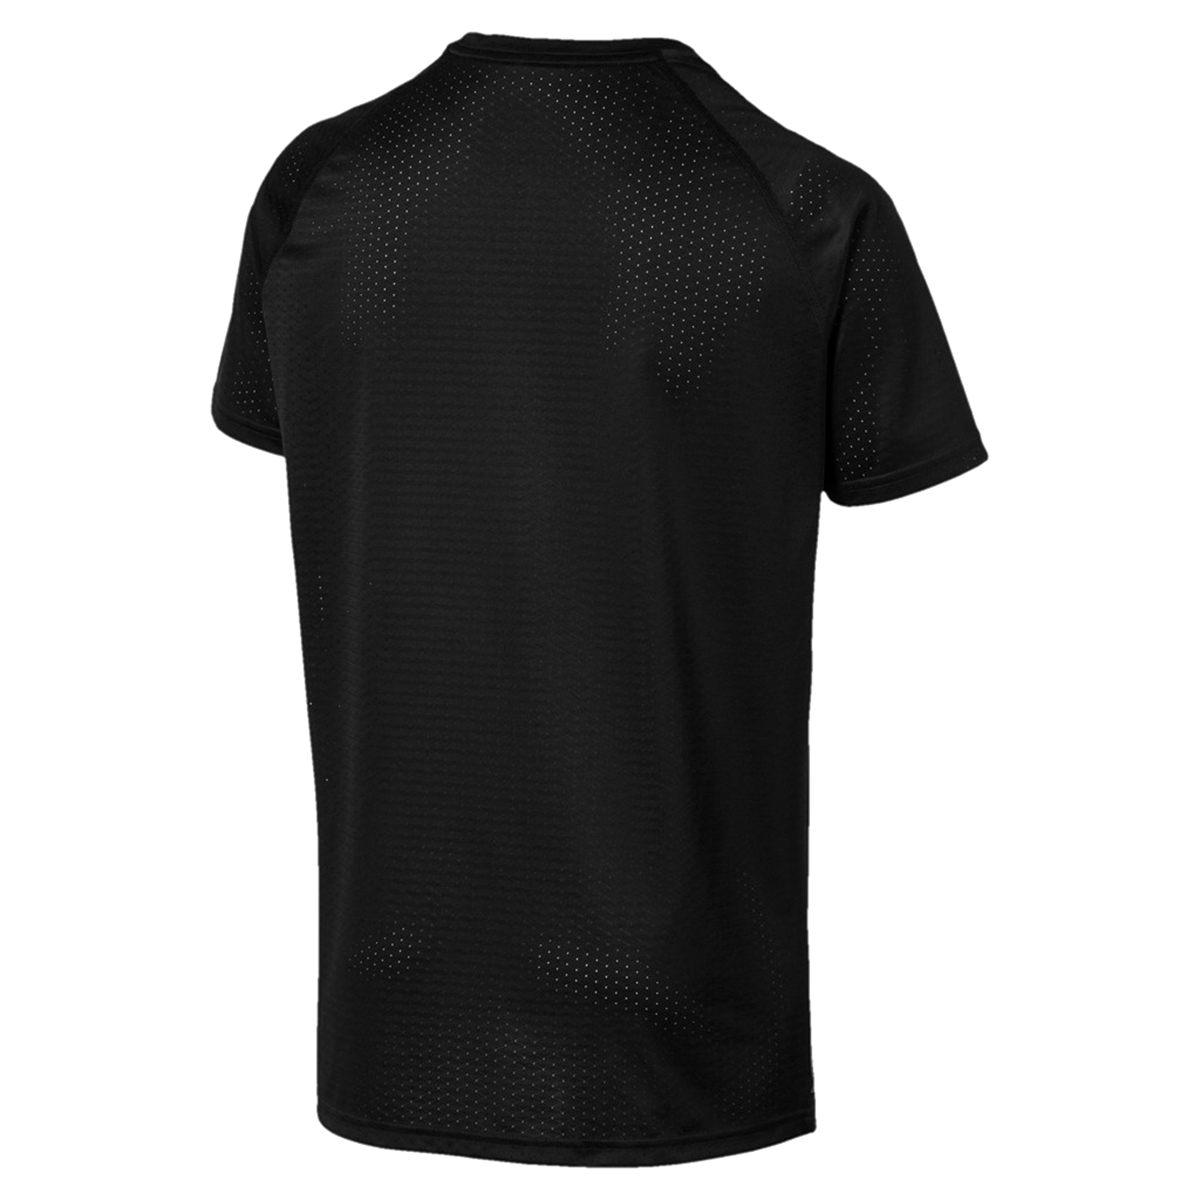 PUMA SS Tech Tee Herren T-shirt Sportswear 518389 02 schwarz